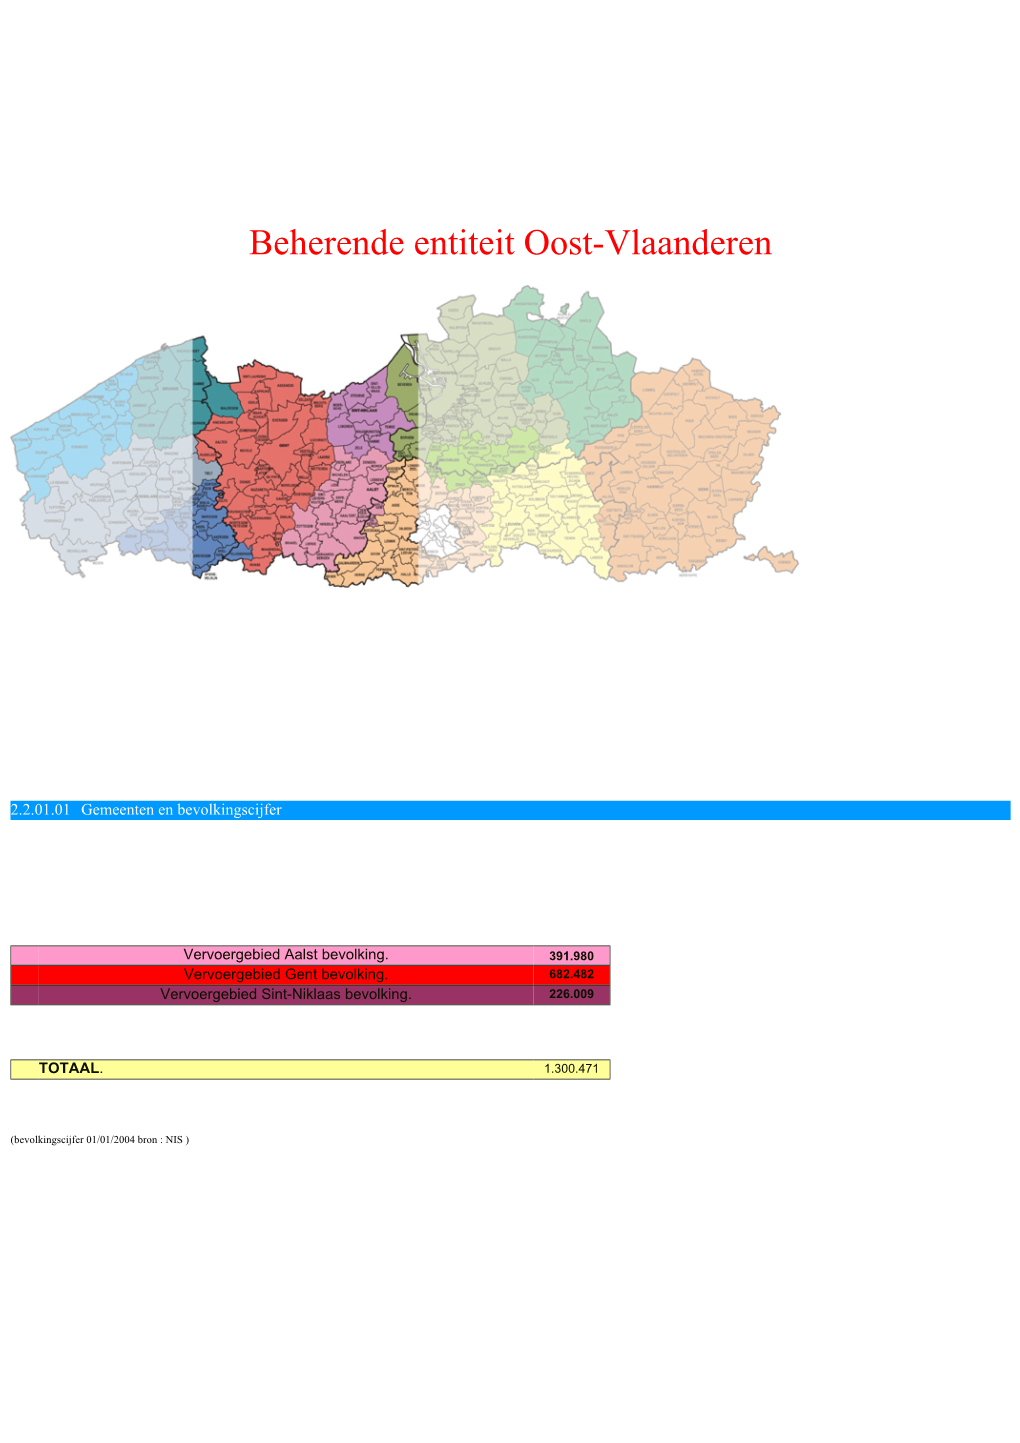 Beherende Entiteit Oost-Vlaanderen